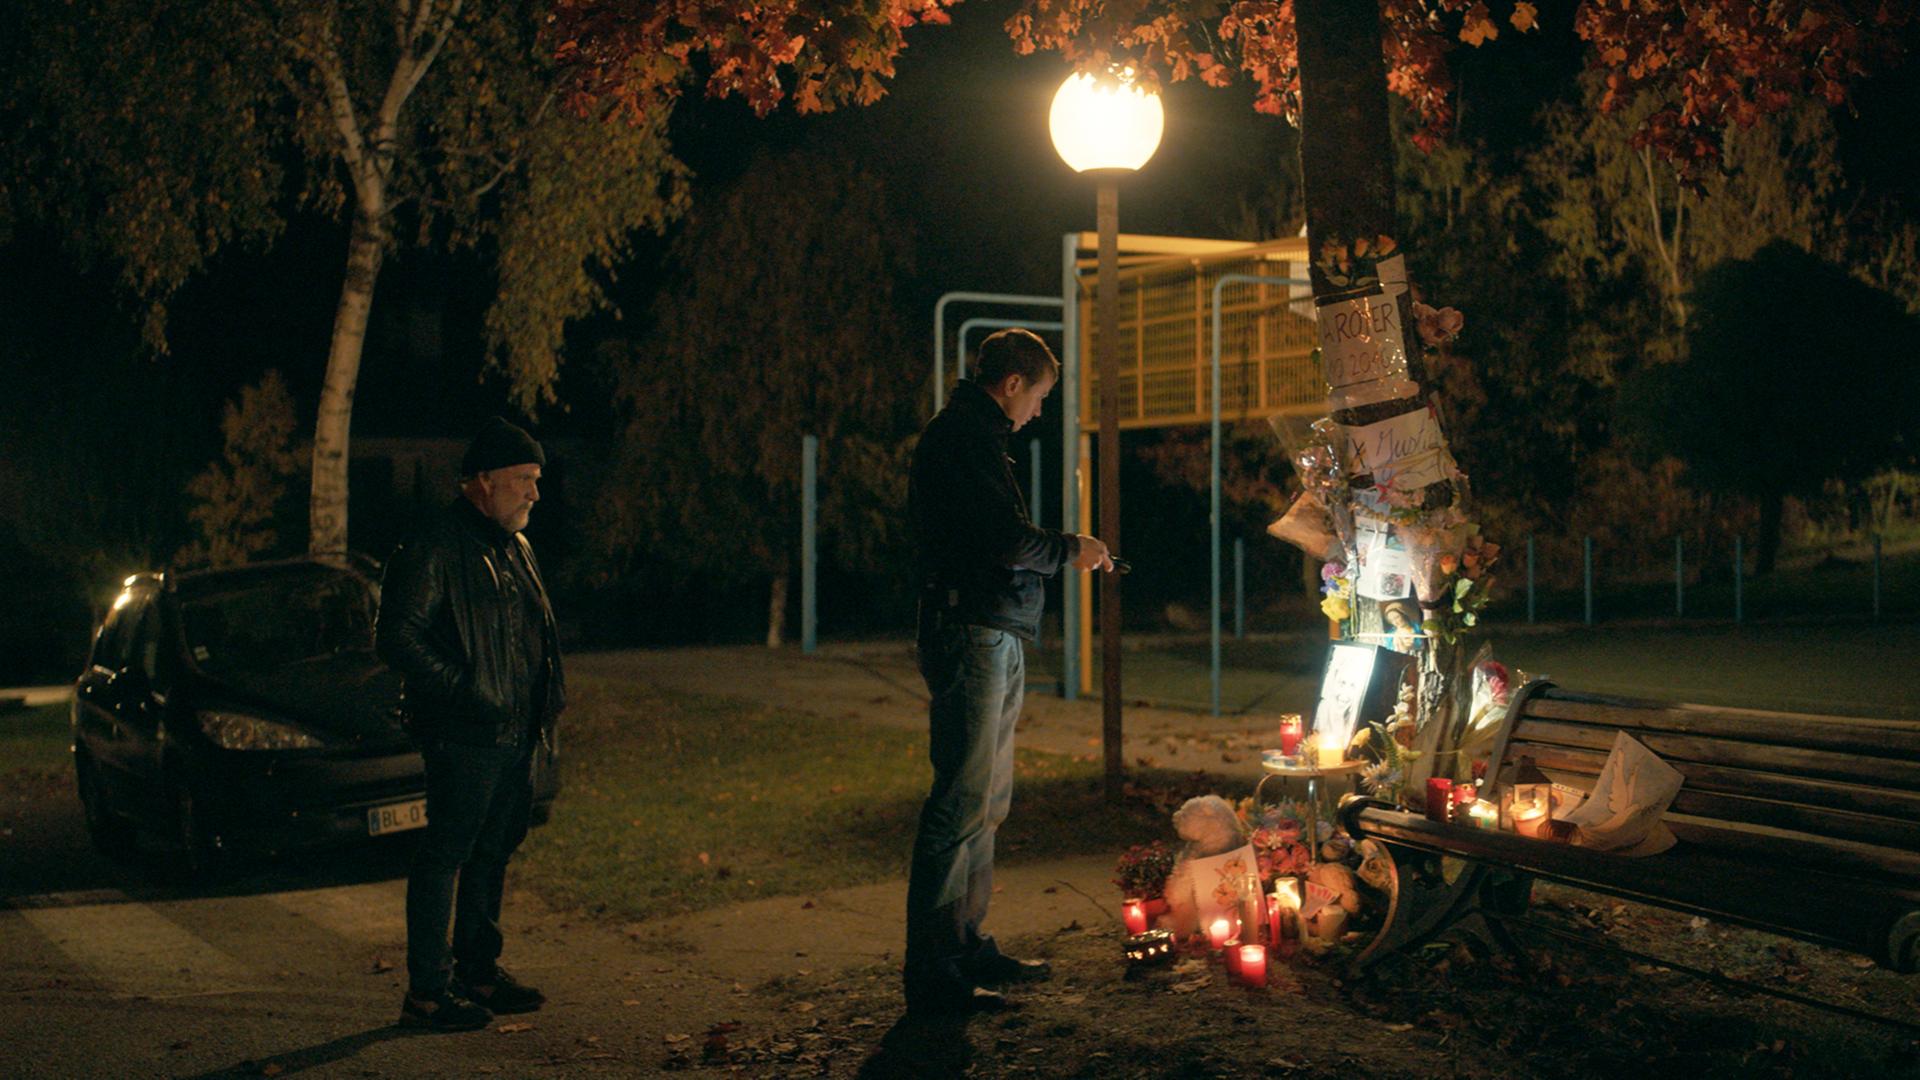 Zwei Männer stehen im Dunkeln am Tatort eines Mordfalls. Dort brennen Kerzen, die an das Opfer erinnern.